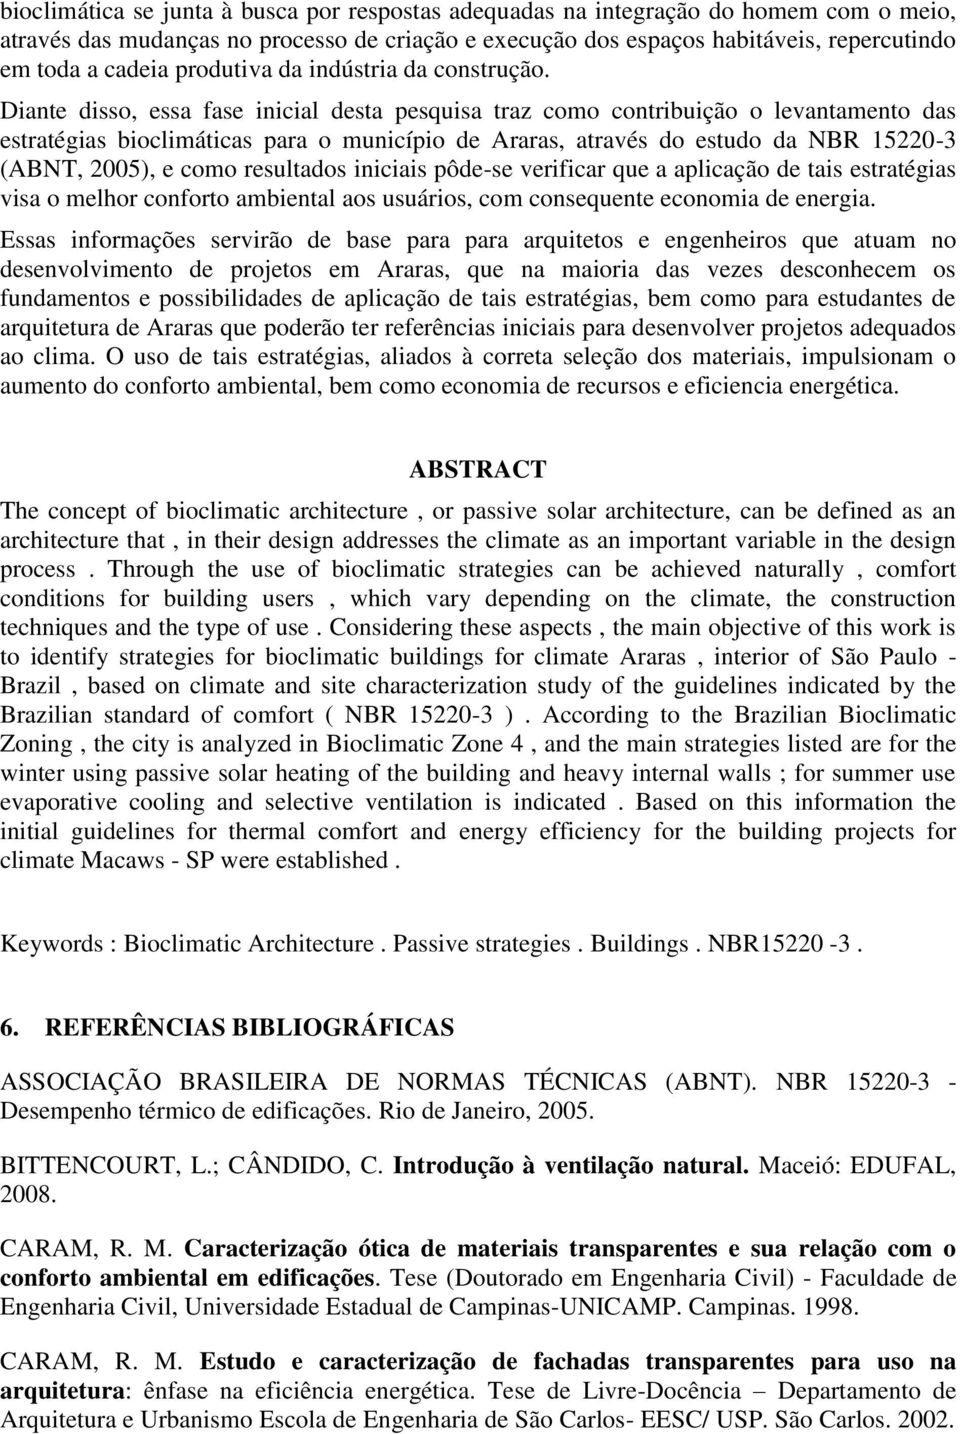 Diante disso, essa fase inicial desta pesquisa traz como contribuição o levantamento das estratégias bioclimáticas para o município de Araras, através do estudo da NBR 15220-3 (ABNT, 2005), e como